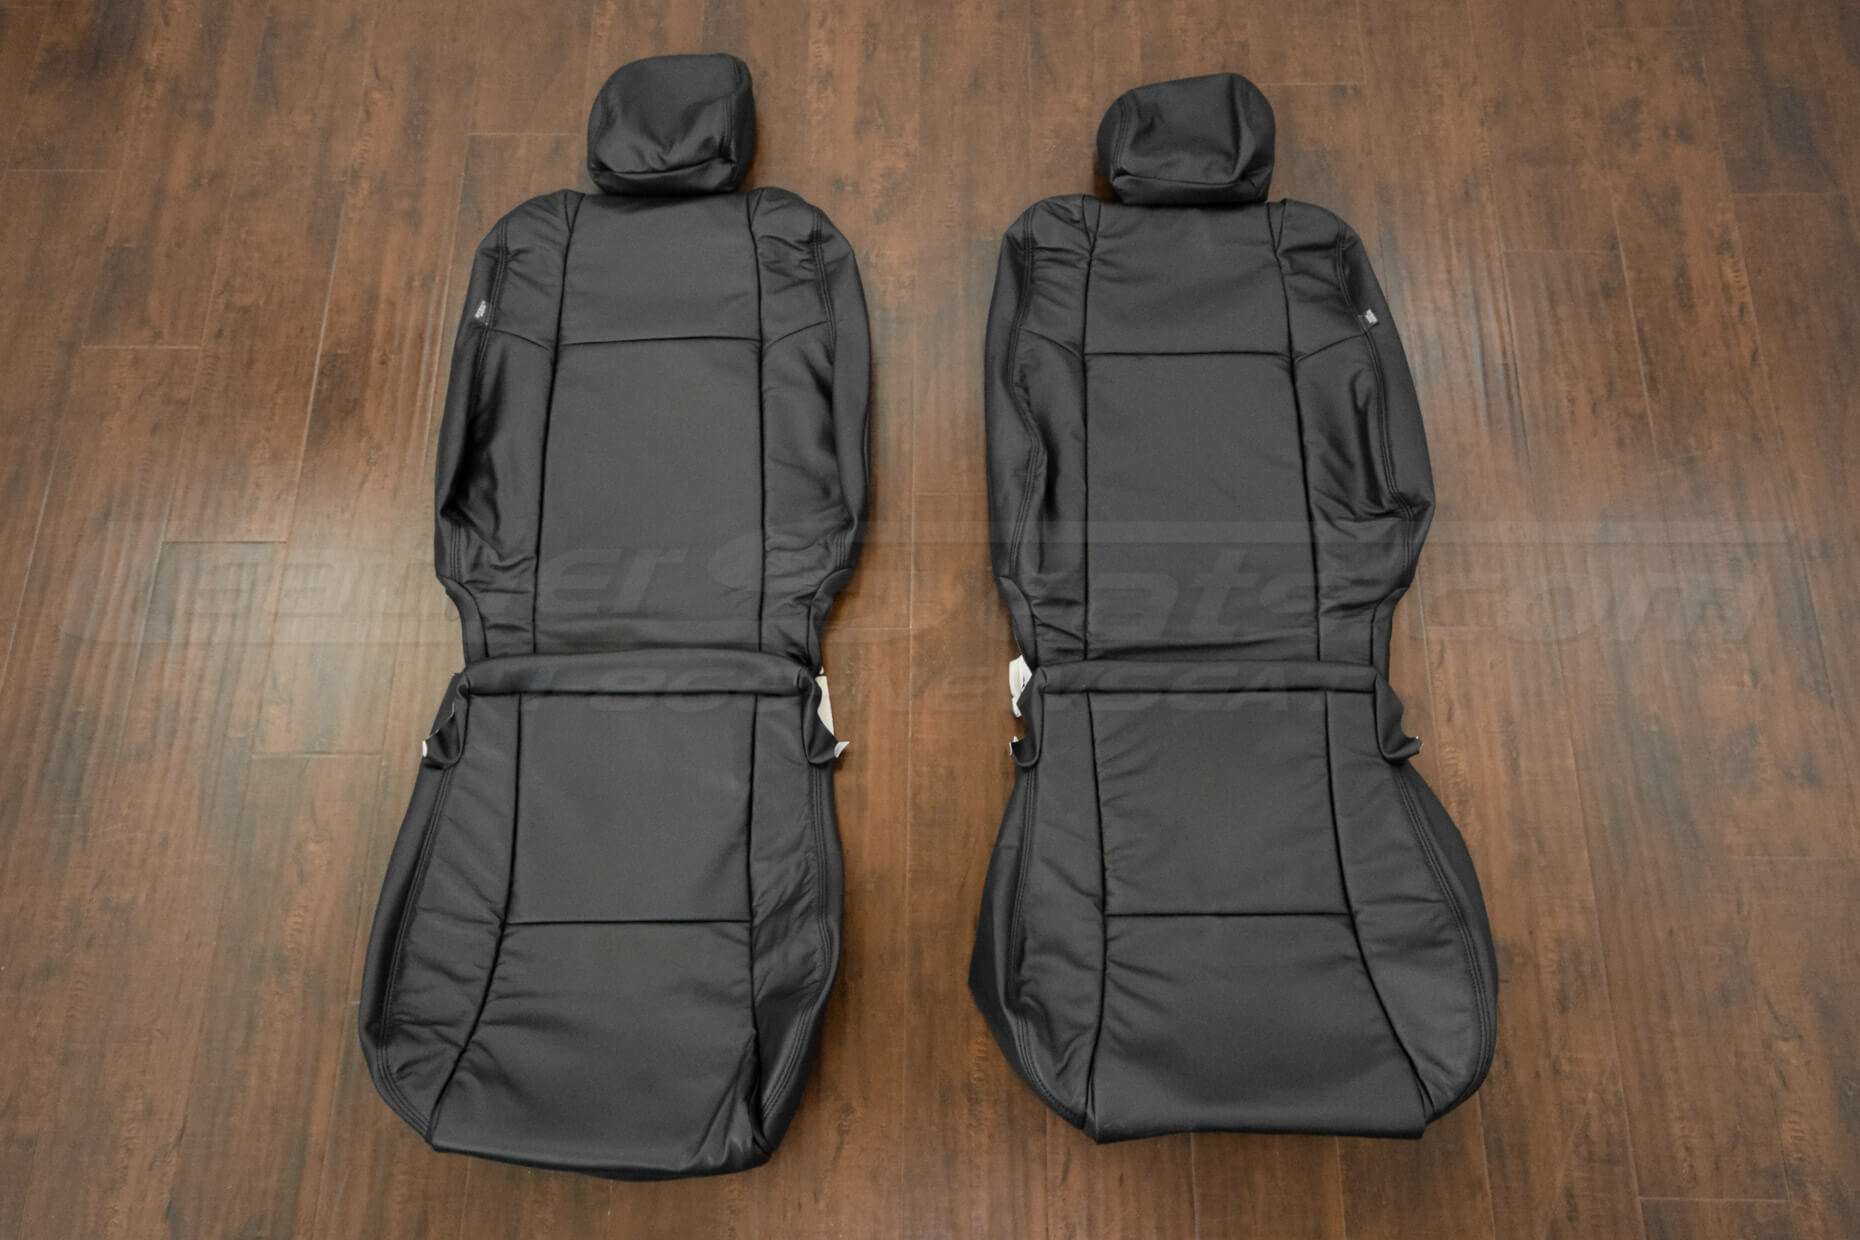 Black 2012-2015 Toyota Tacoma Leather Seat Upholsery Kit - Front seats